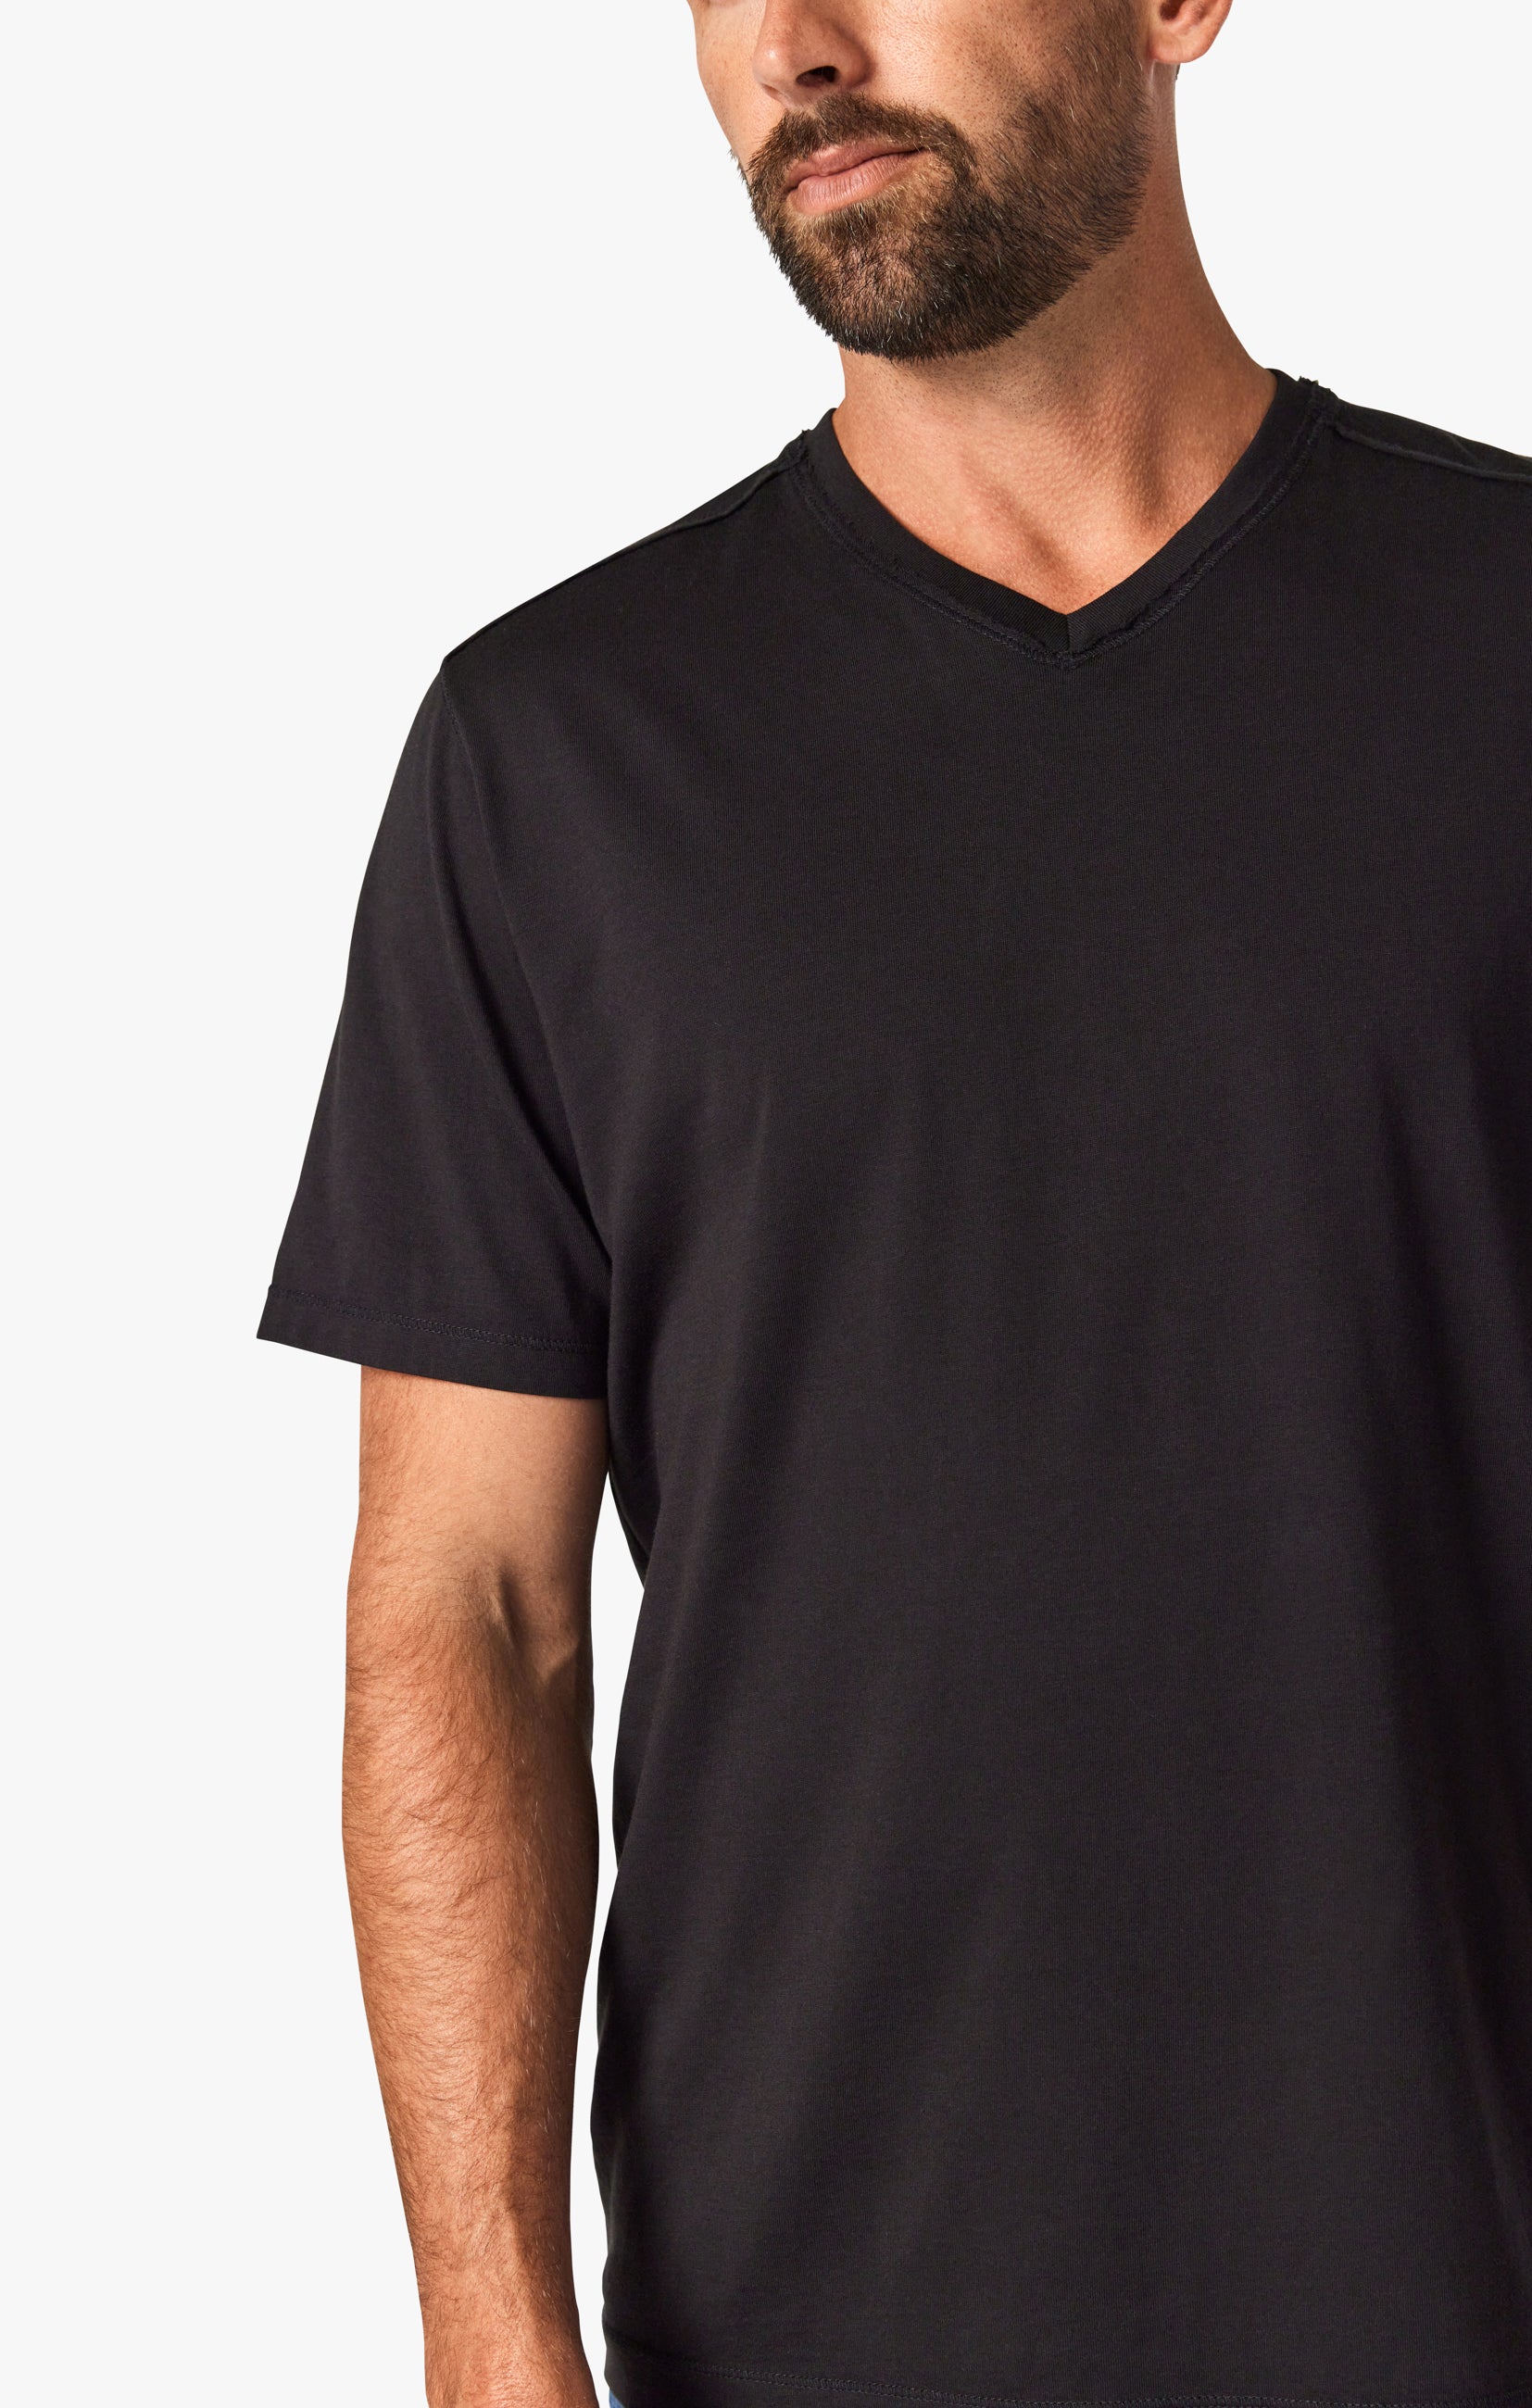 Deconstructed V-Neck T-Shirt in Black Image 4